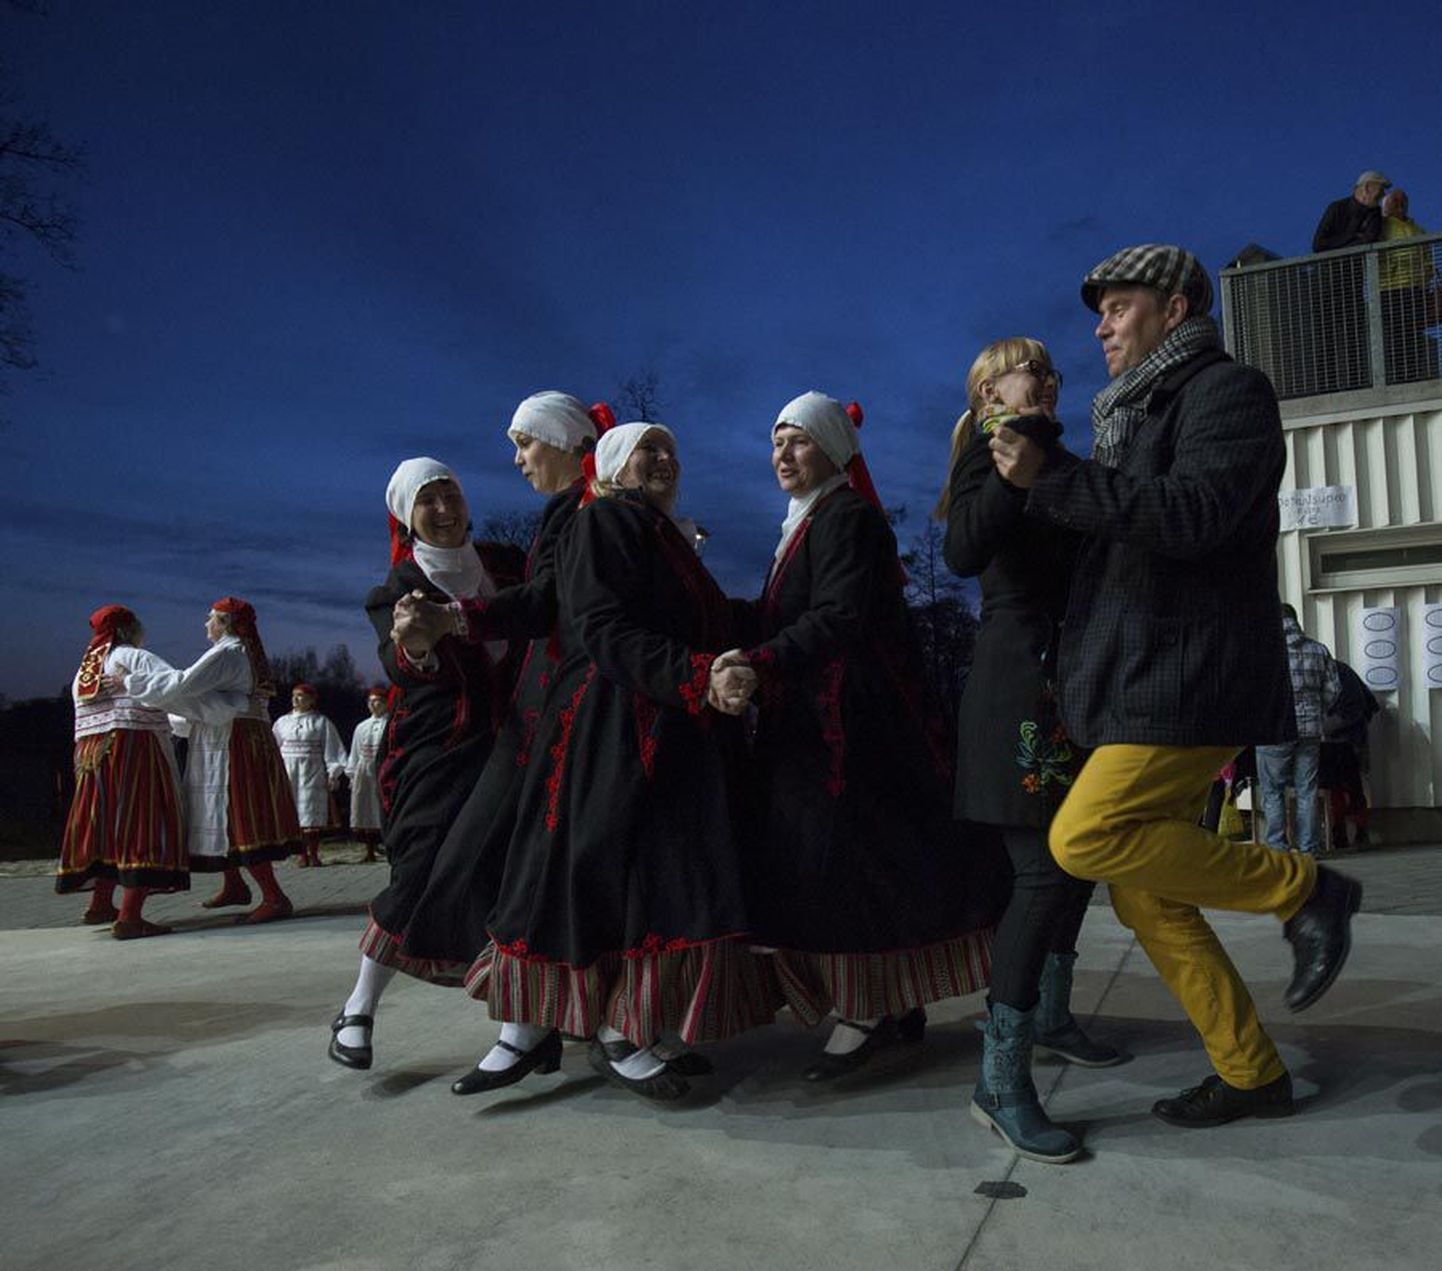 Rahvariides tantsijate kõrvale mahtusid samme seadma tavapäraseis tänavarõivais tantsupaarid.